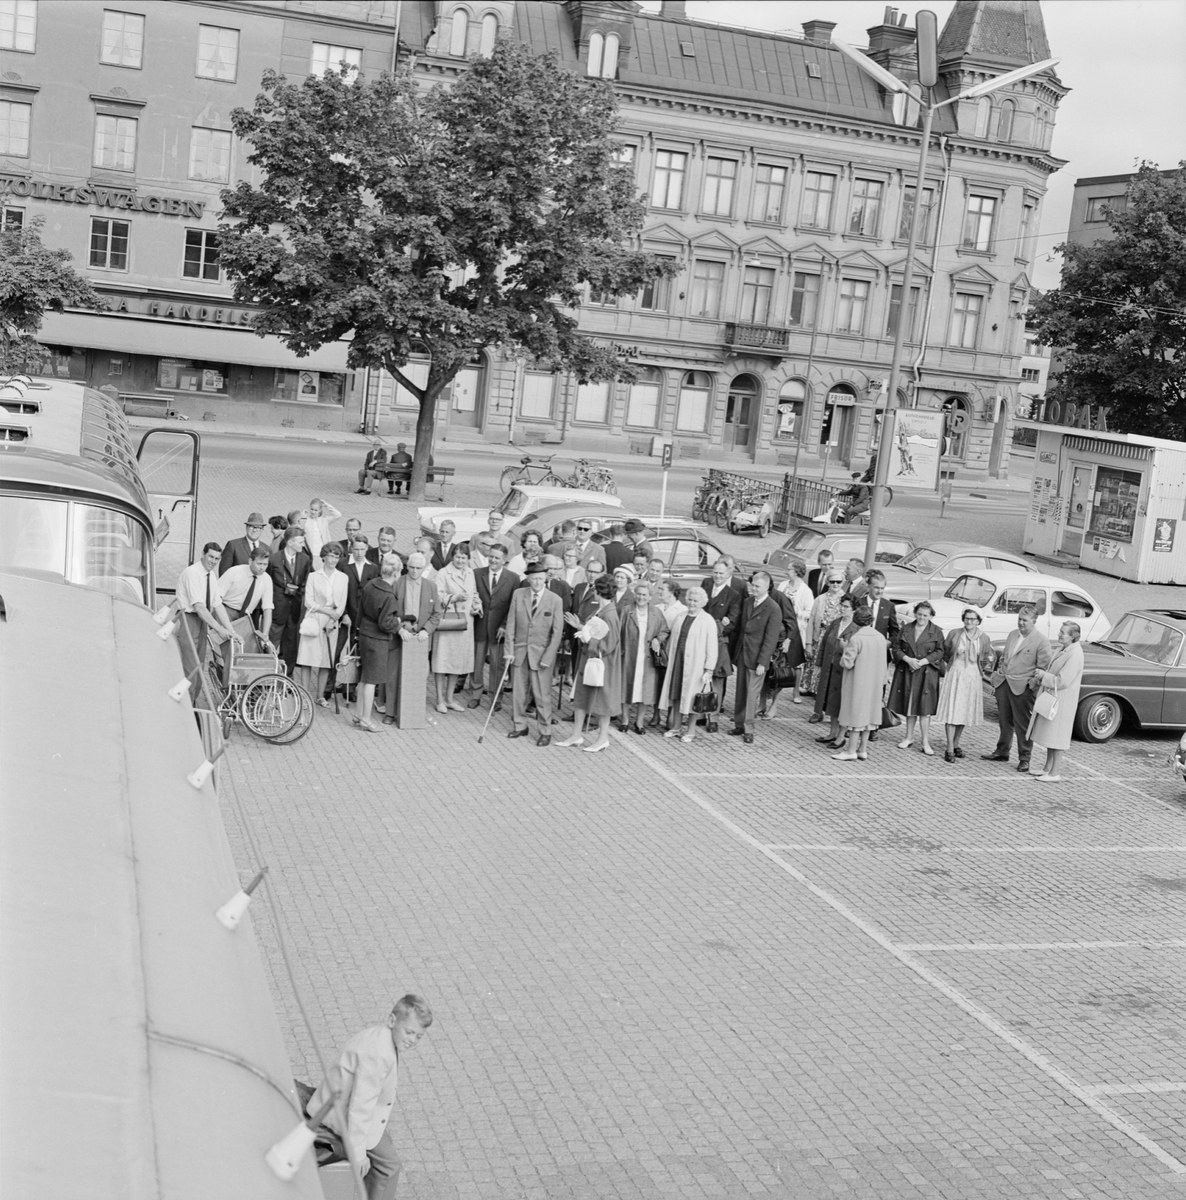 Utflykt till Furuvik - vid bussen på Vaksala torg, Uppsala juni 1965